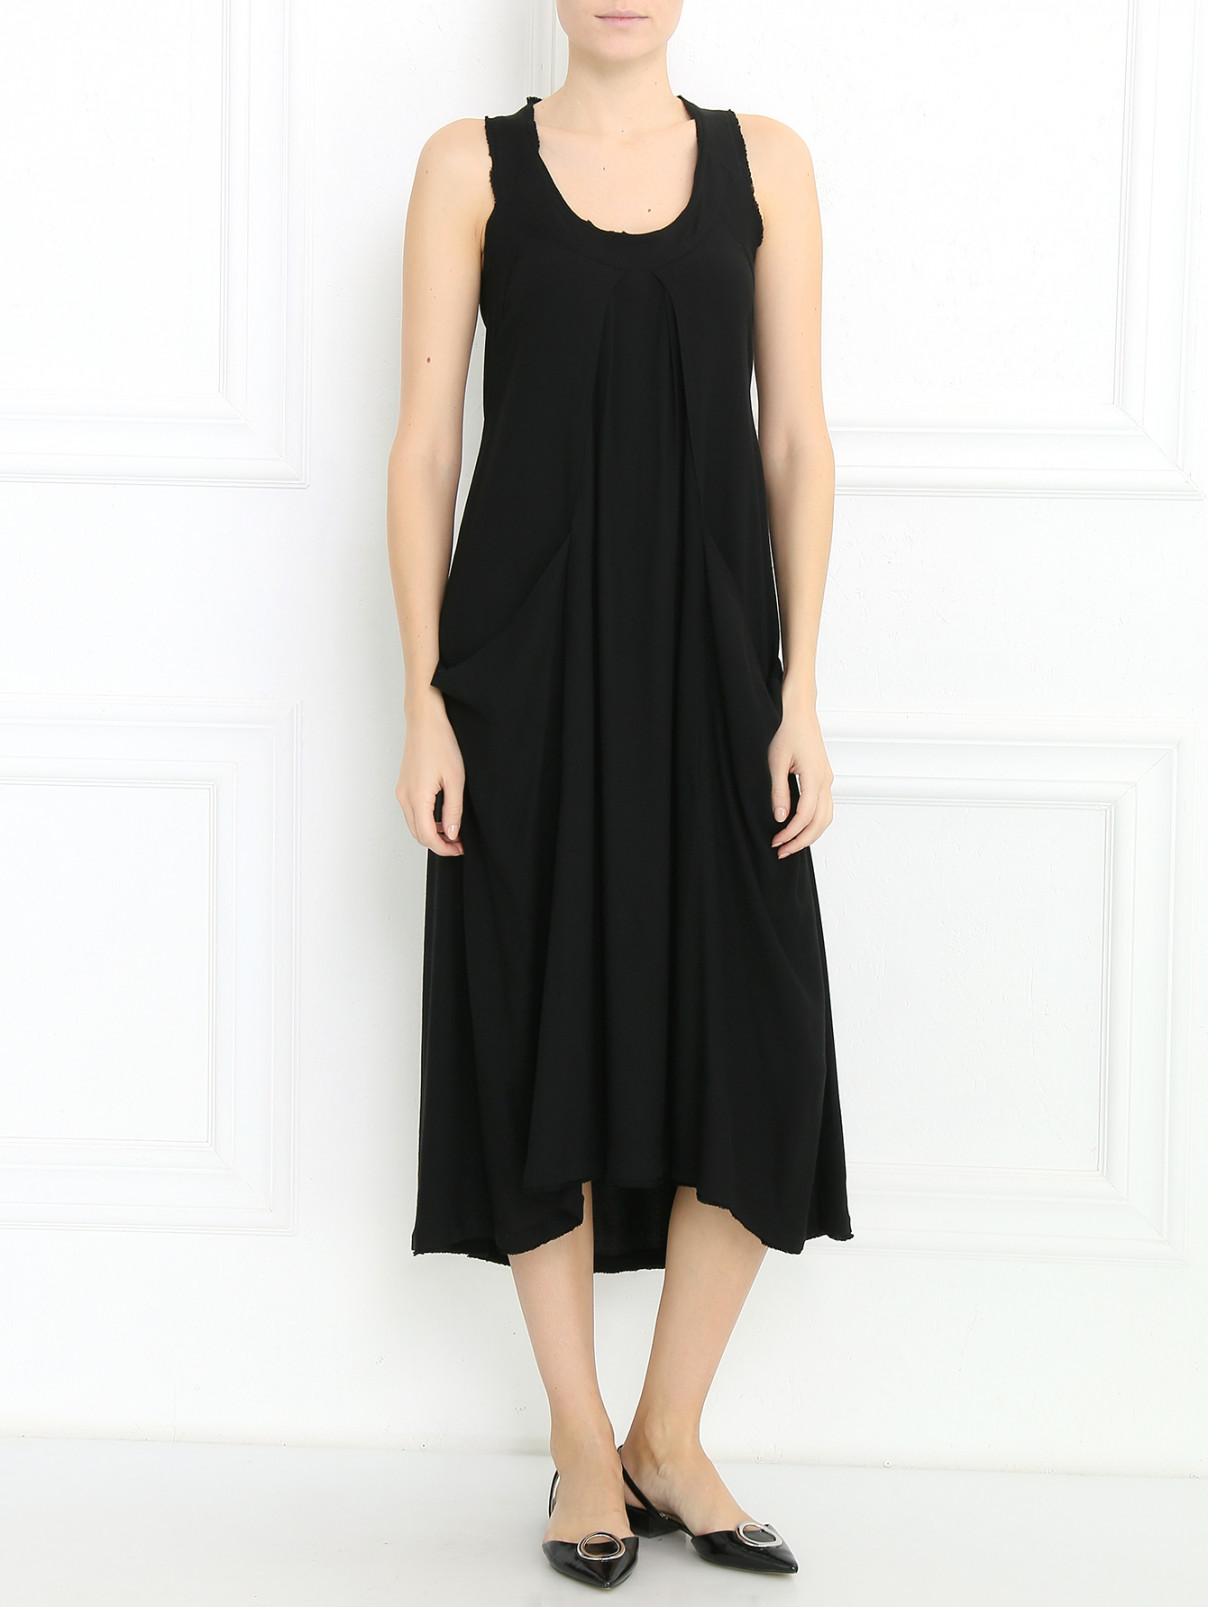 Платье из трикотажа с декоративной отделкой Donna Karan  –  Модель Общий вид  – Цвет:  Черный